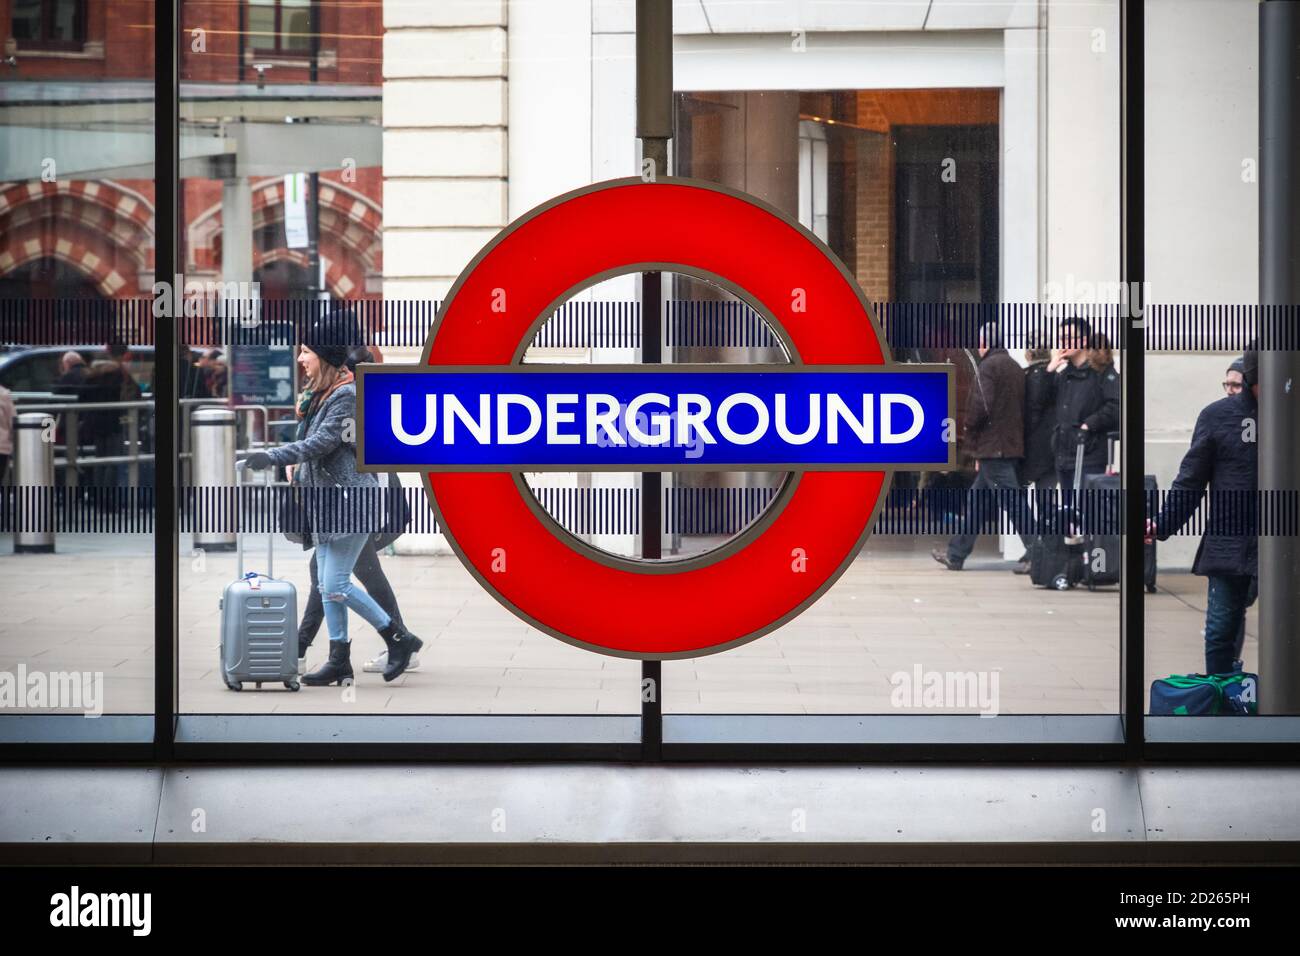 Londres, Royaume-Uni - 2 février 2020 - panneau de métro de Londres à la station Kings Cross avec les touristes de passage Banque D'Images